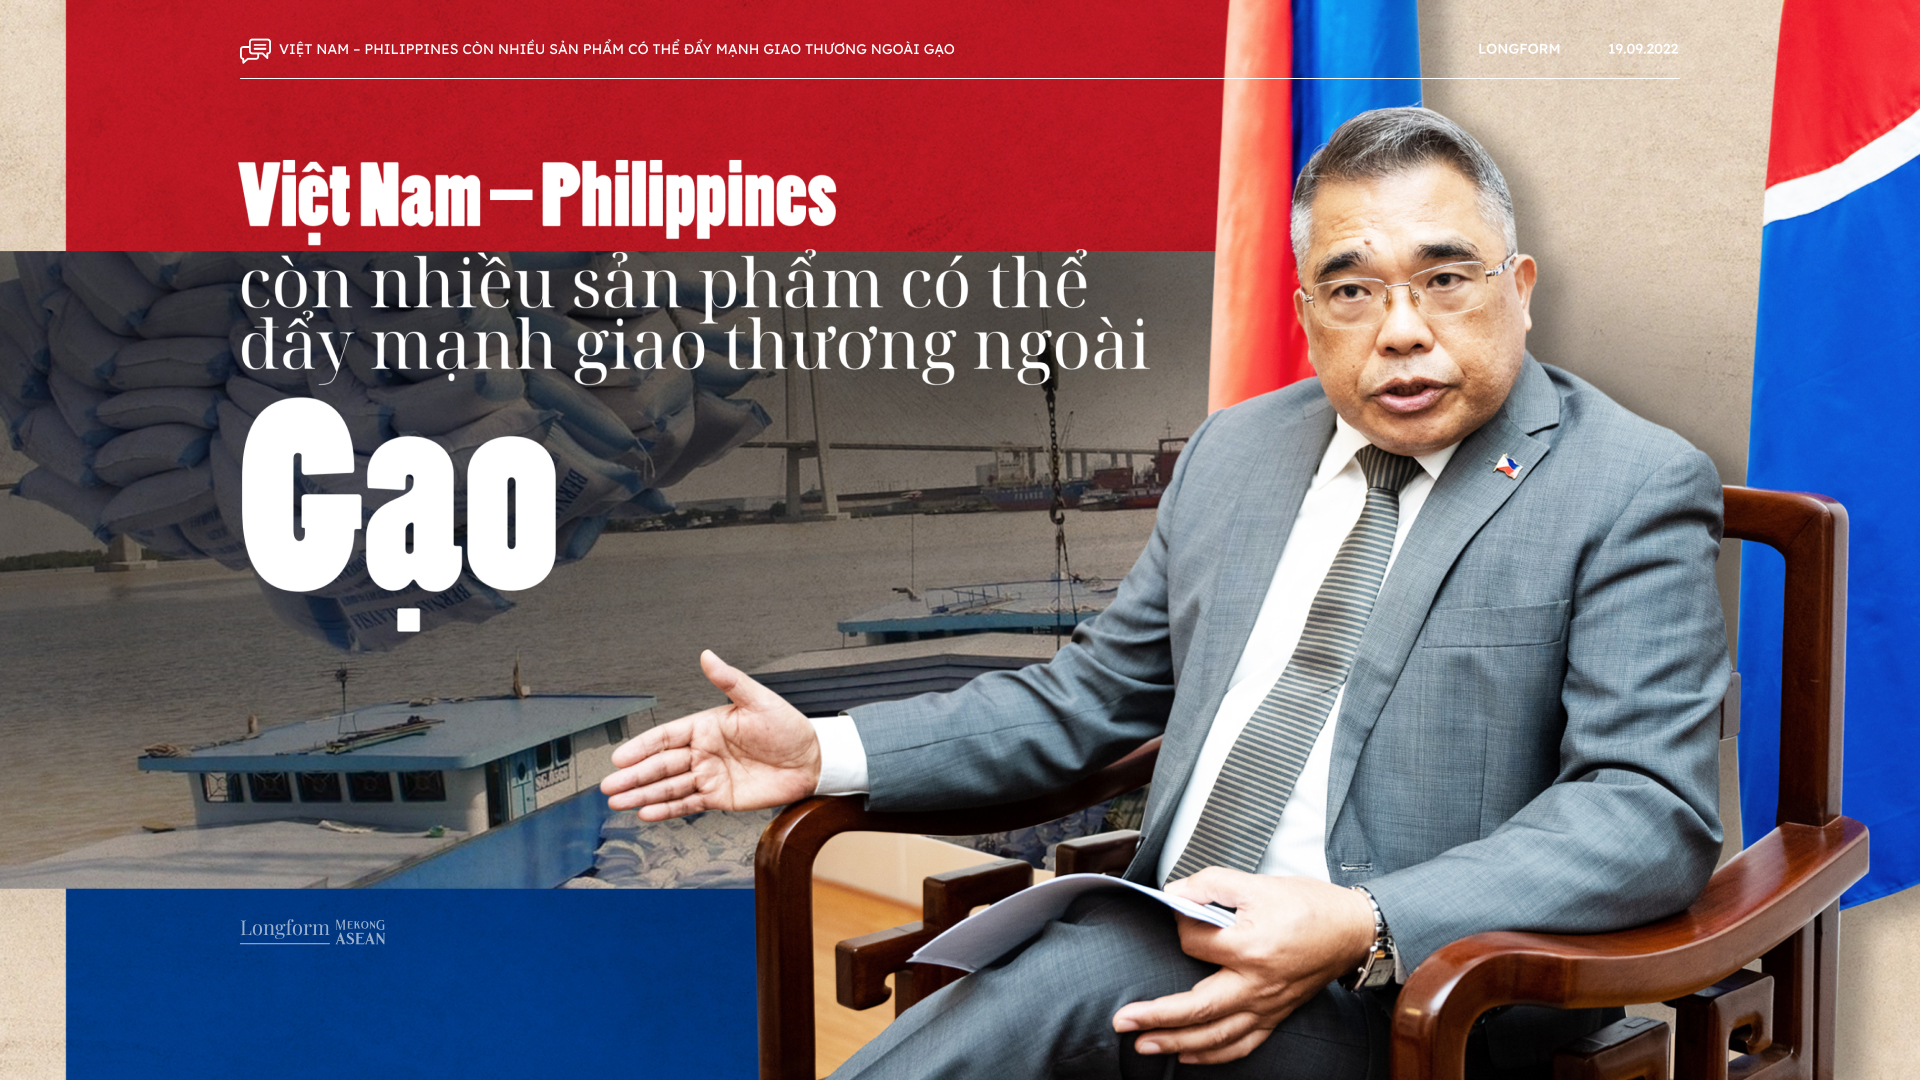 Đại sứ Philippines: Quan hệ thương mại song phương vẫn còn nhiều dư địa phát triển